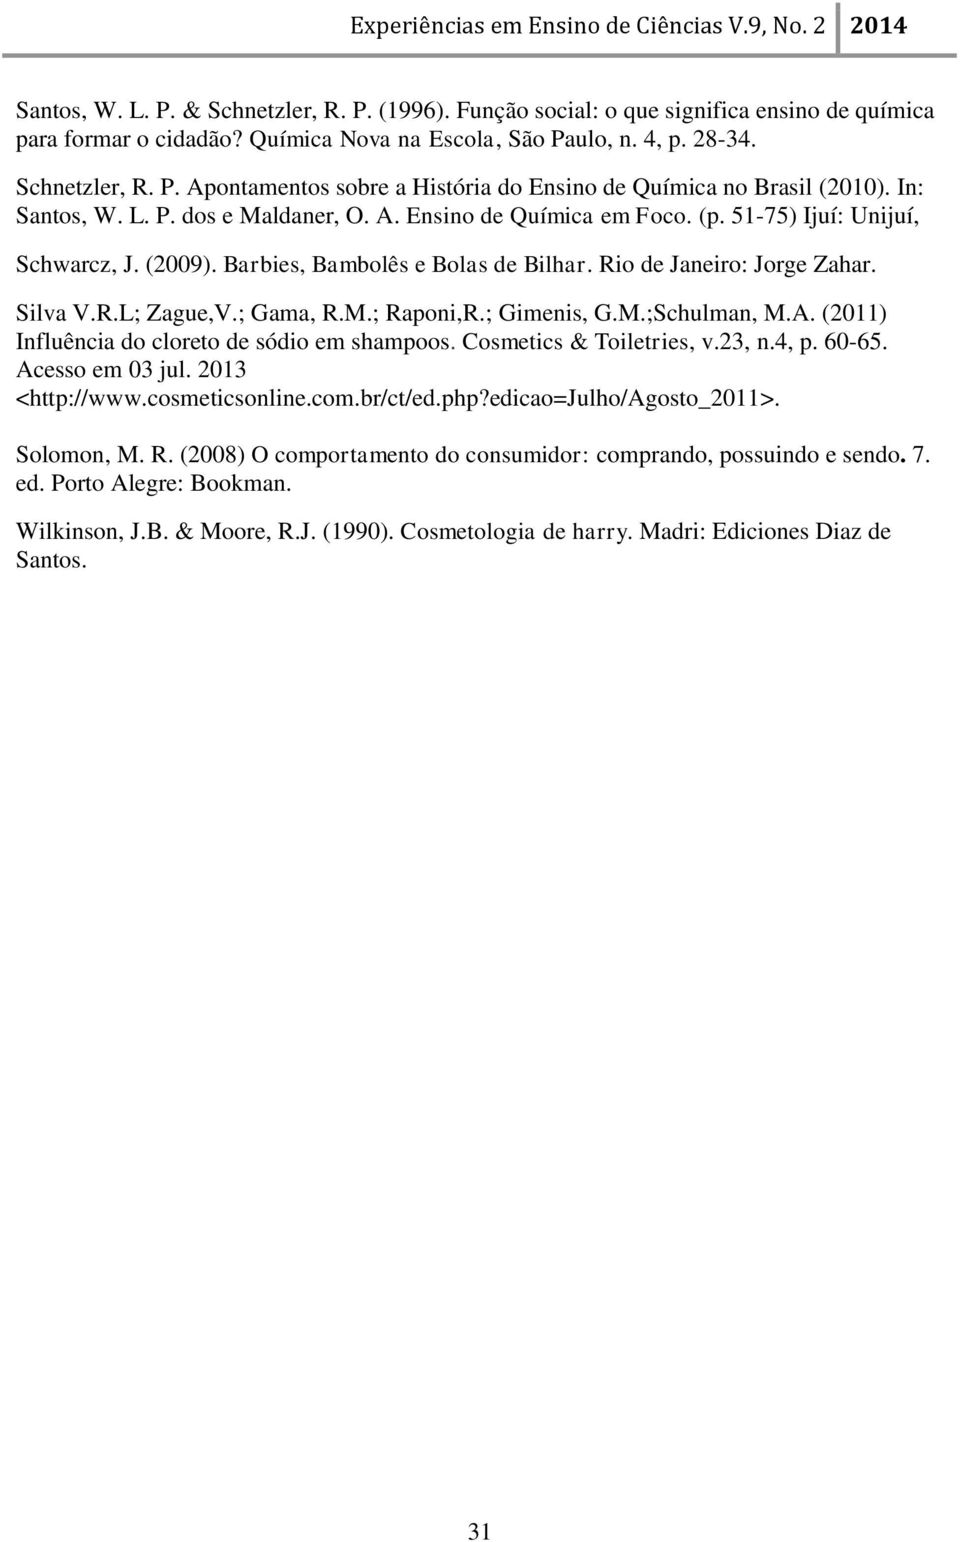 ; Gama, R.M.; Raponi,R.; Gimenis, G.M.;Schulman, M.A. (2011) Influência do cloreto de sódio em shampoos. Cosmetics & Toiletries, v.23, n.4, p. 60-65. Acesso em 03 jul. 2013 <http://www.